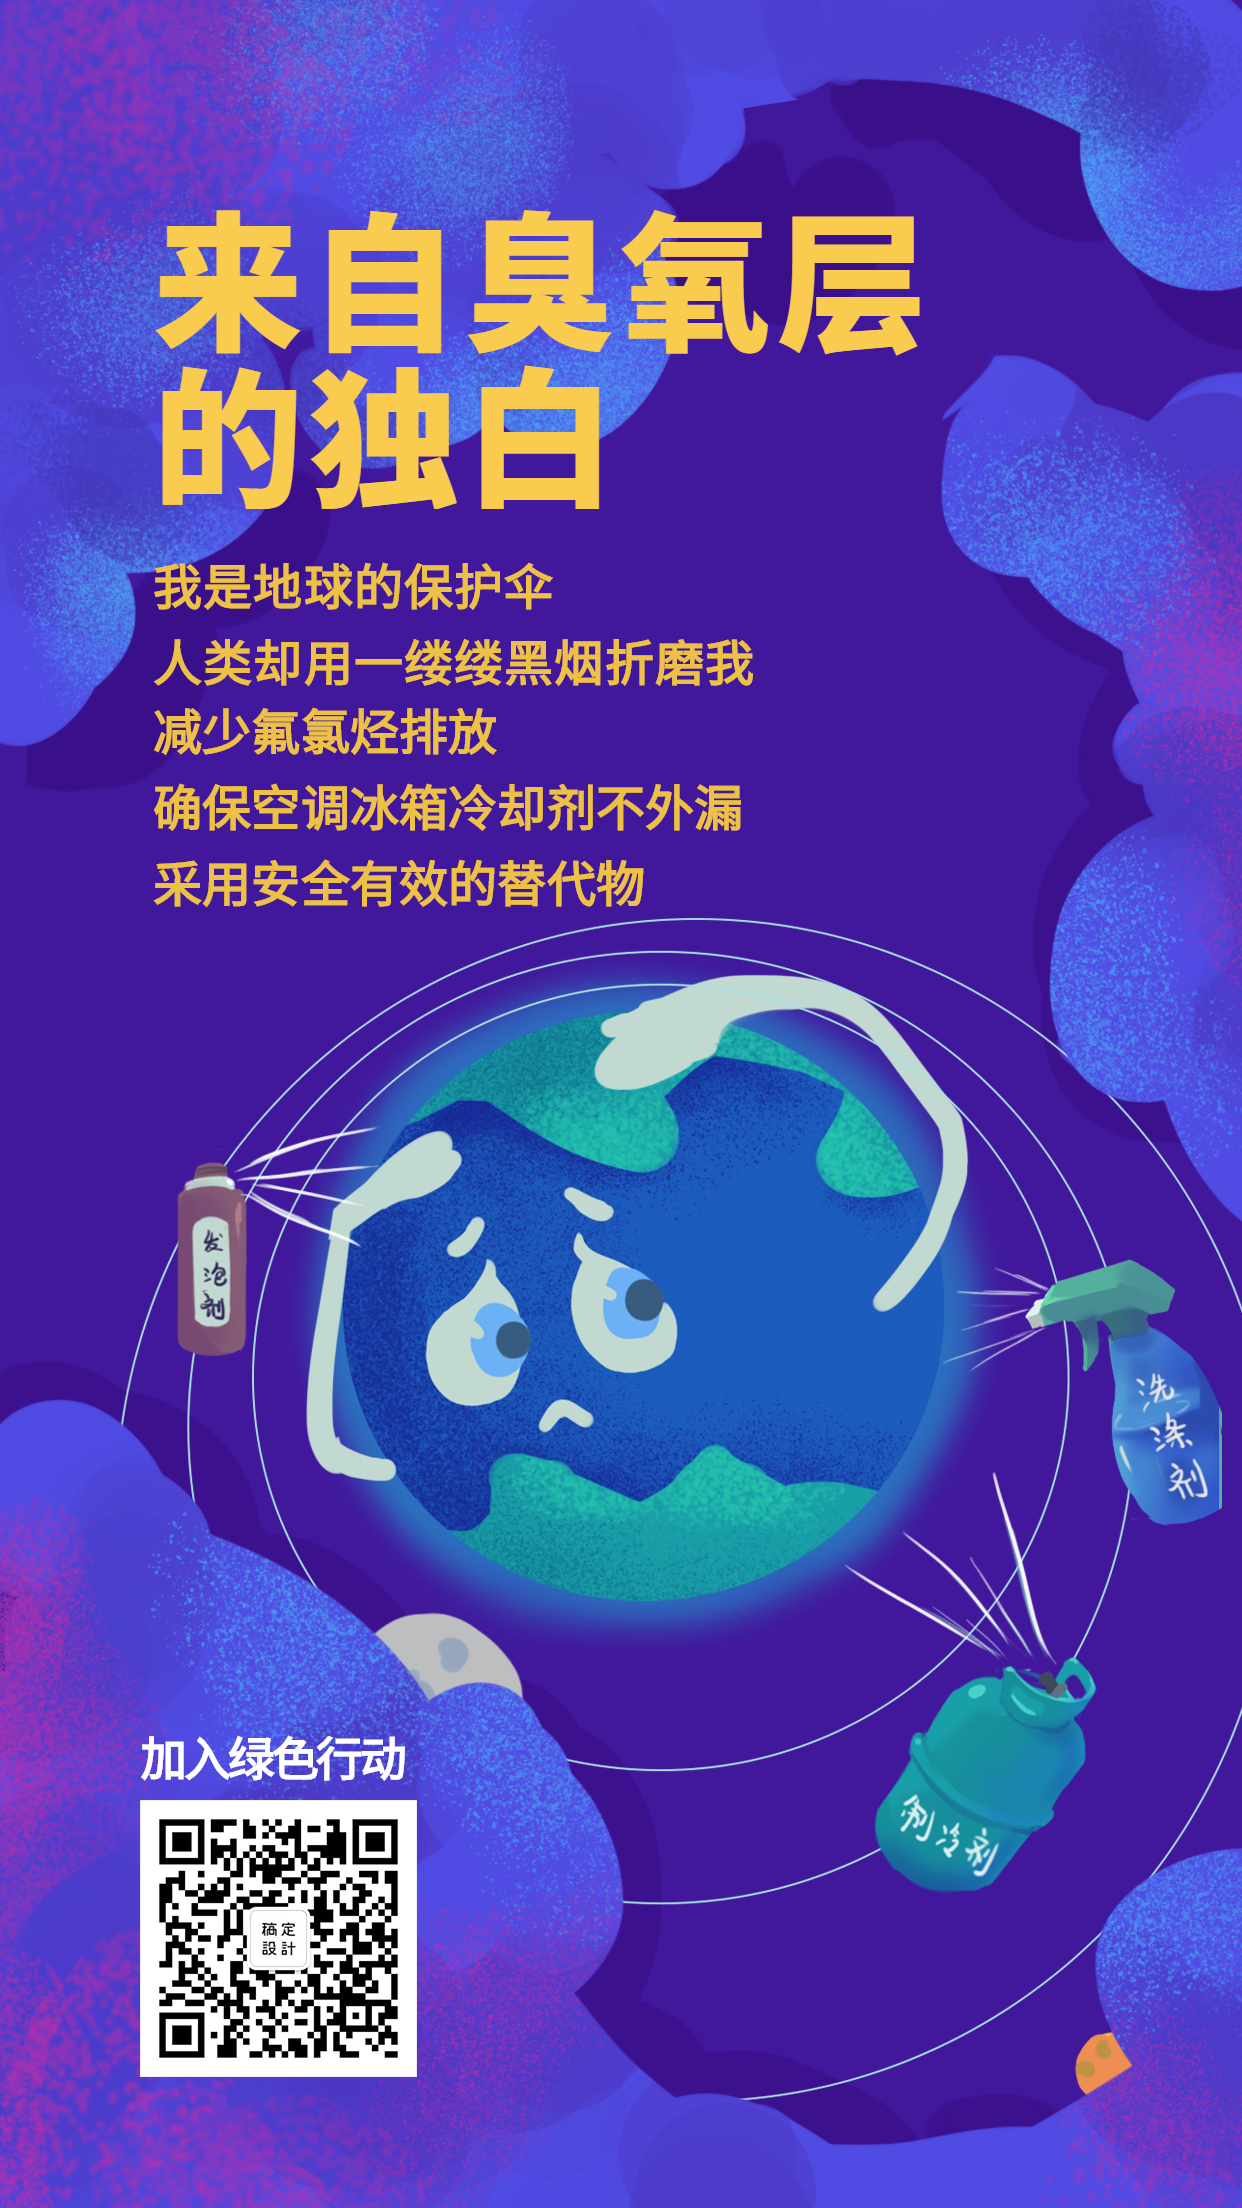 916国际臭氧层保护日手绘地球手机海报